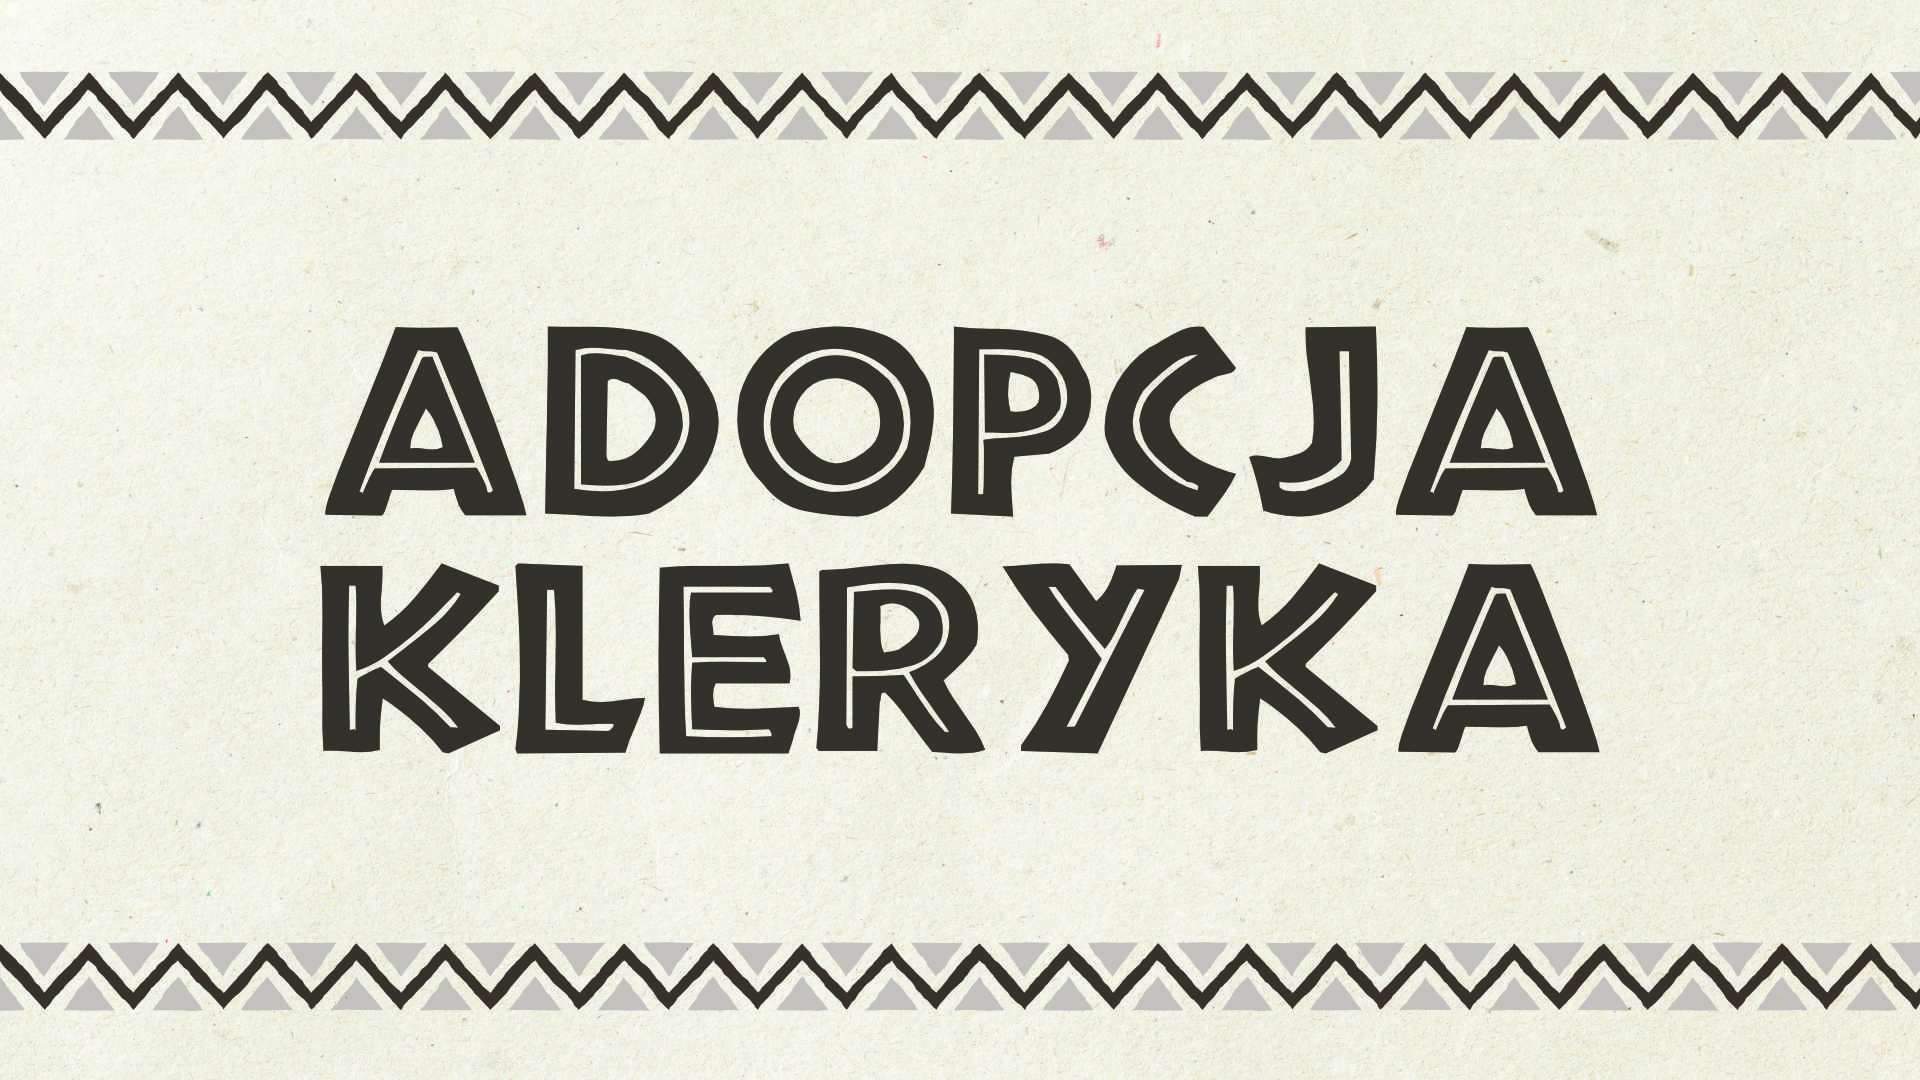 adopcja_kleryka_head